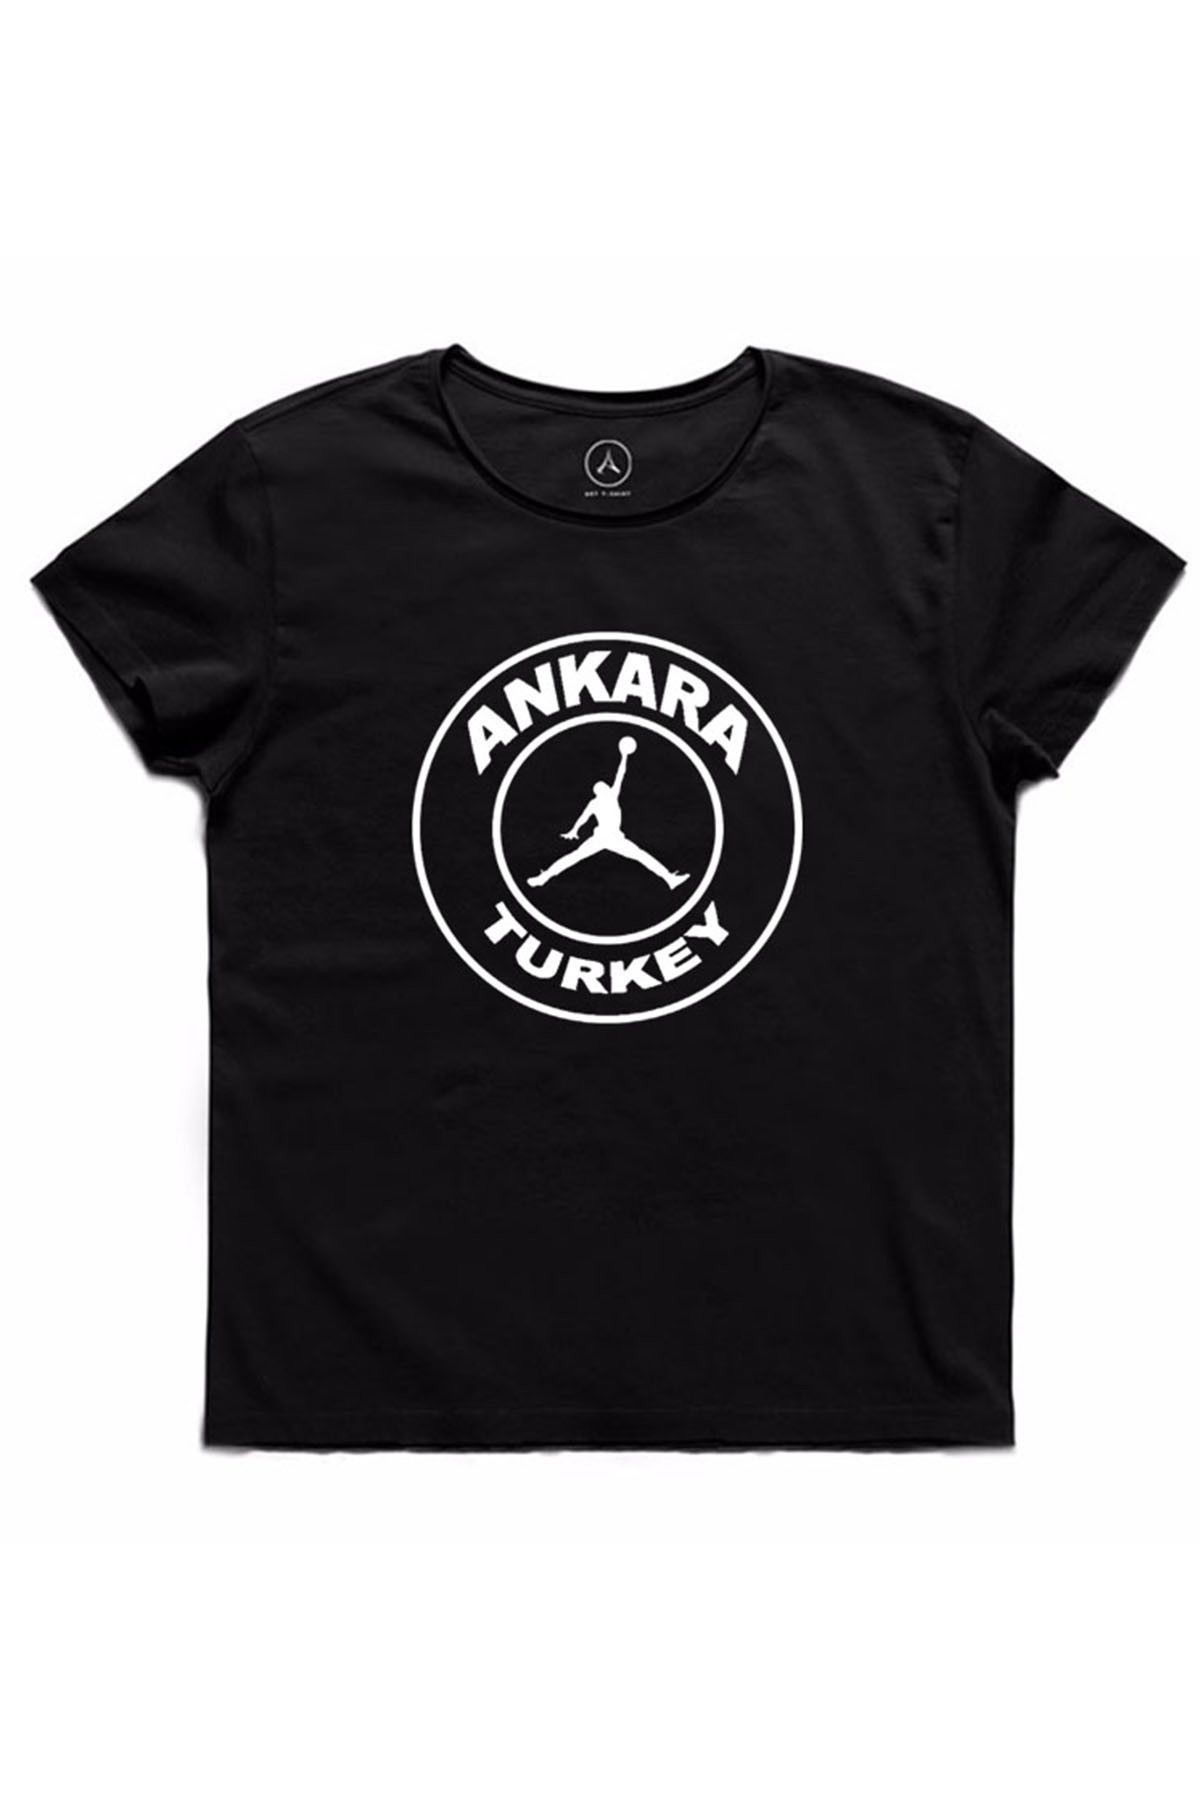 Art T-Shirt Erkek Siyah Basketball Love Ankara Turkey T-Shirt ART018628M